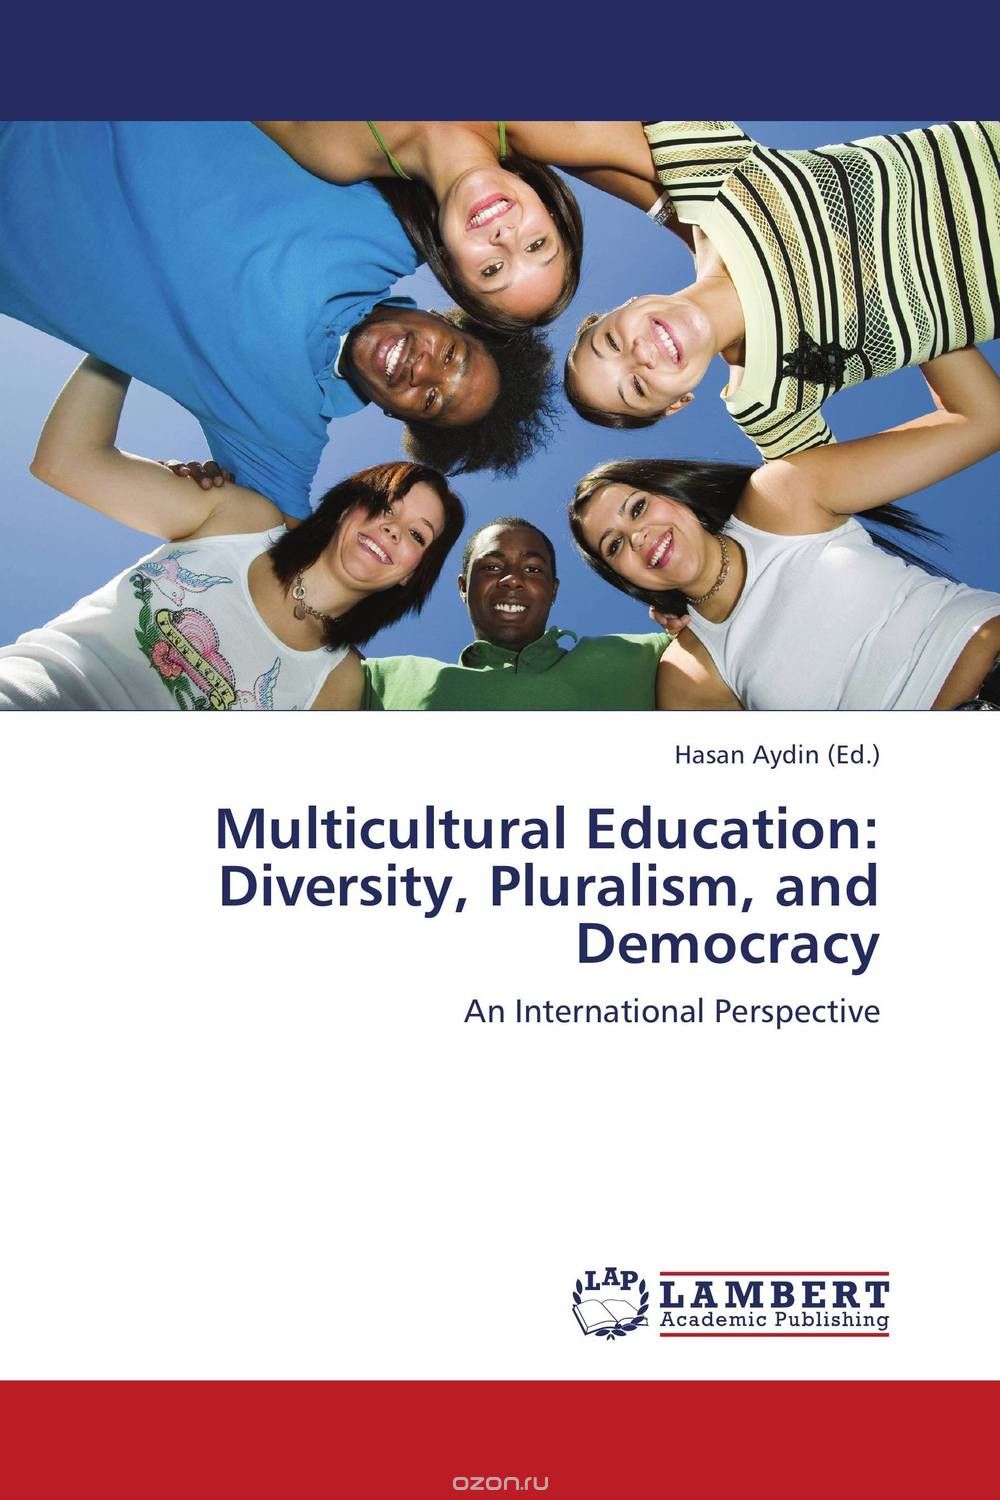 Скачать книгу "Multicultural Education: Diversity, Pluralism, and Democracy"